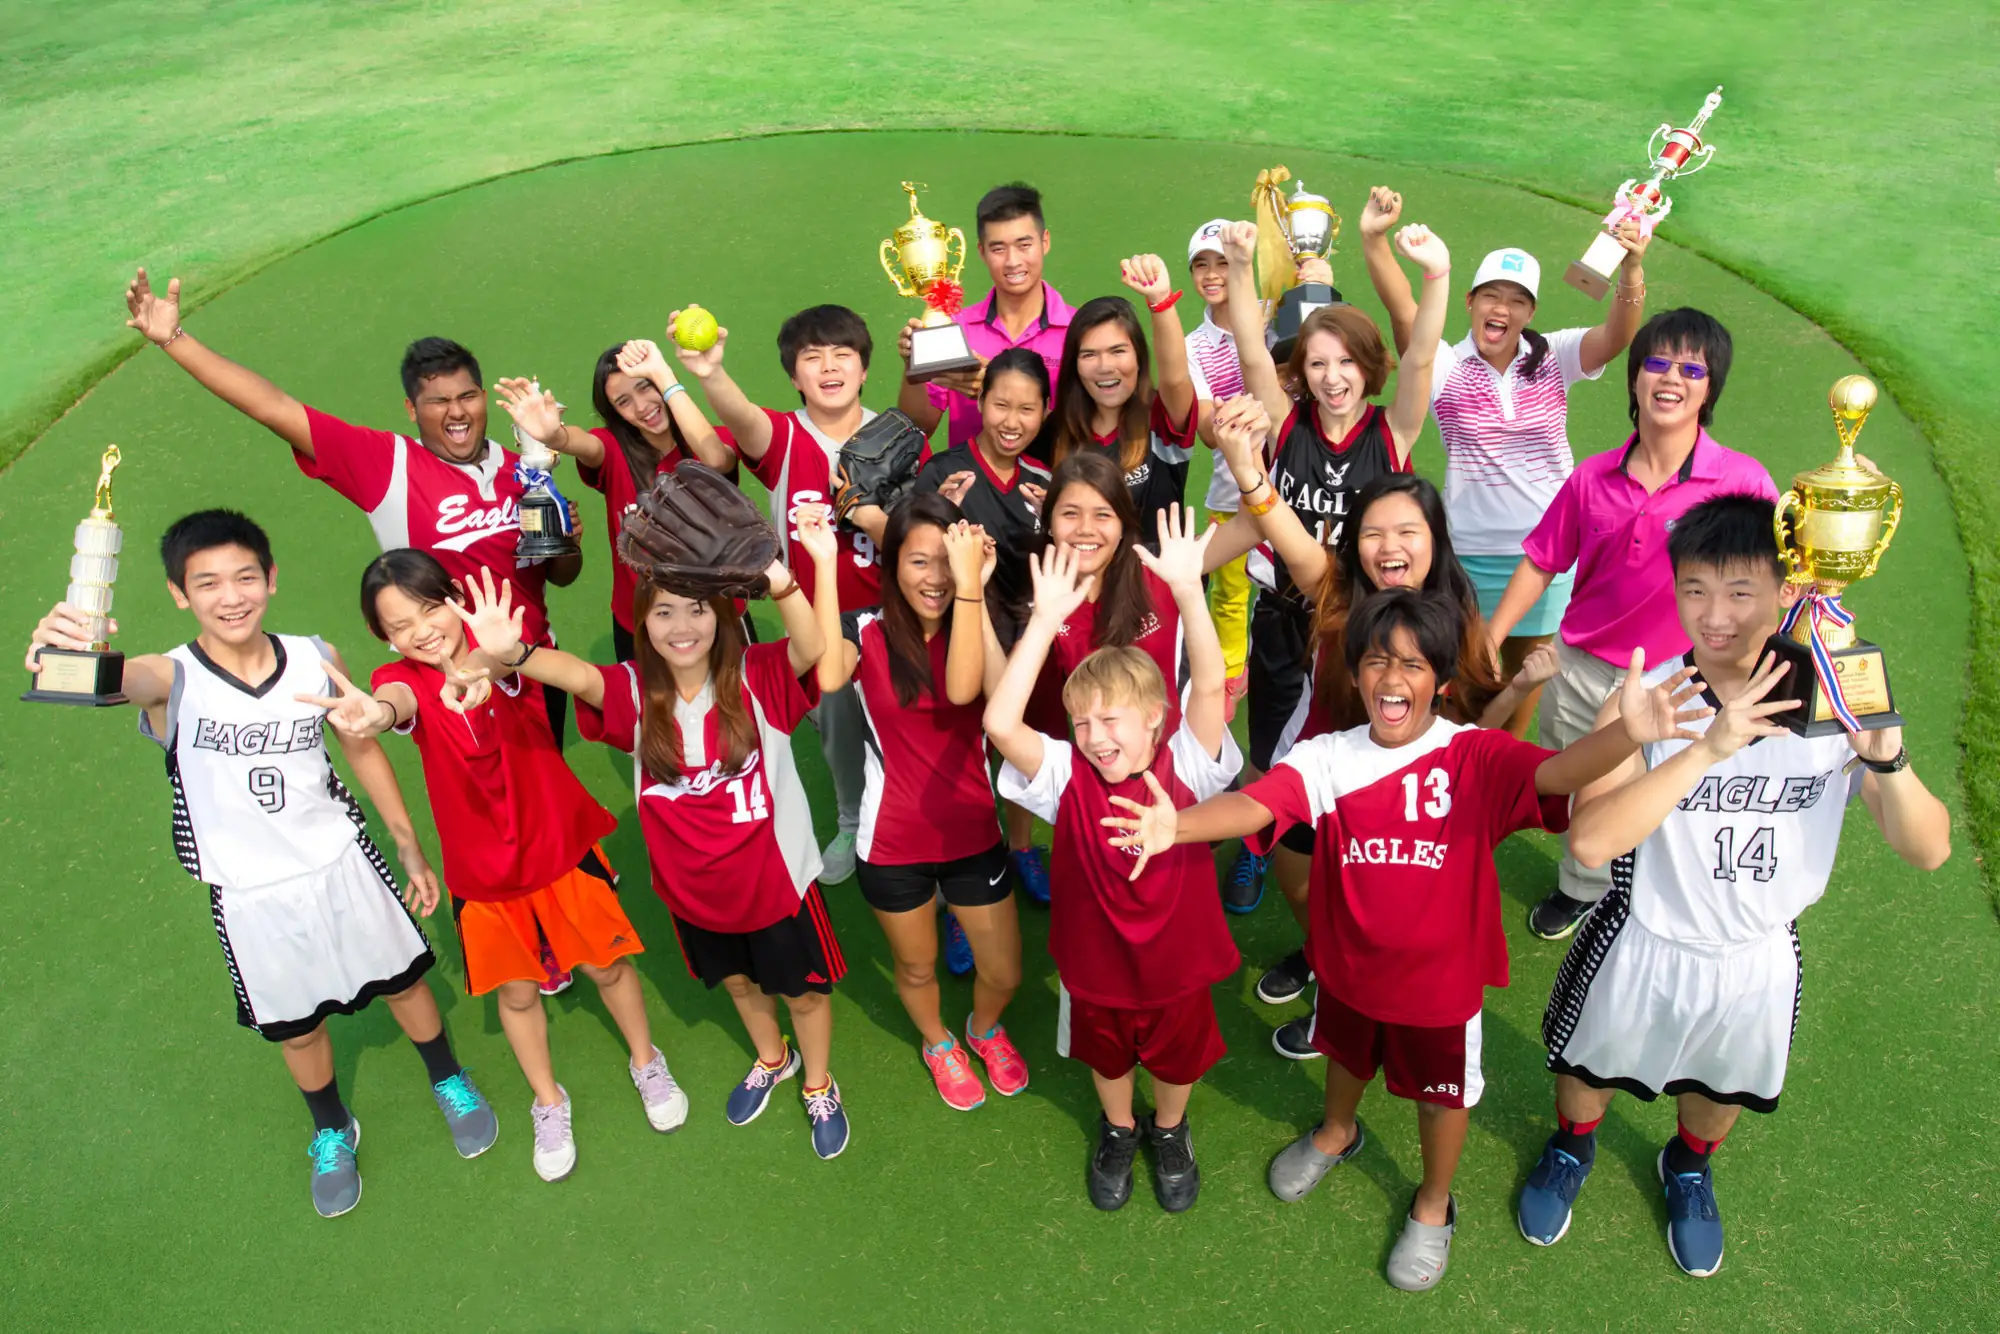 曼谷美國學校American School Bangkok 美國多元文化培育孩童